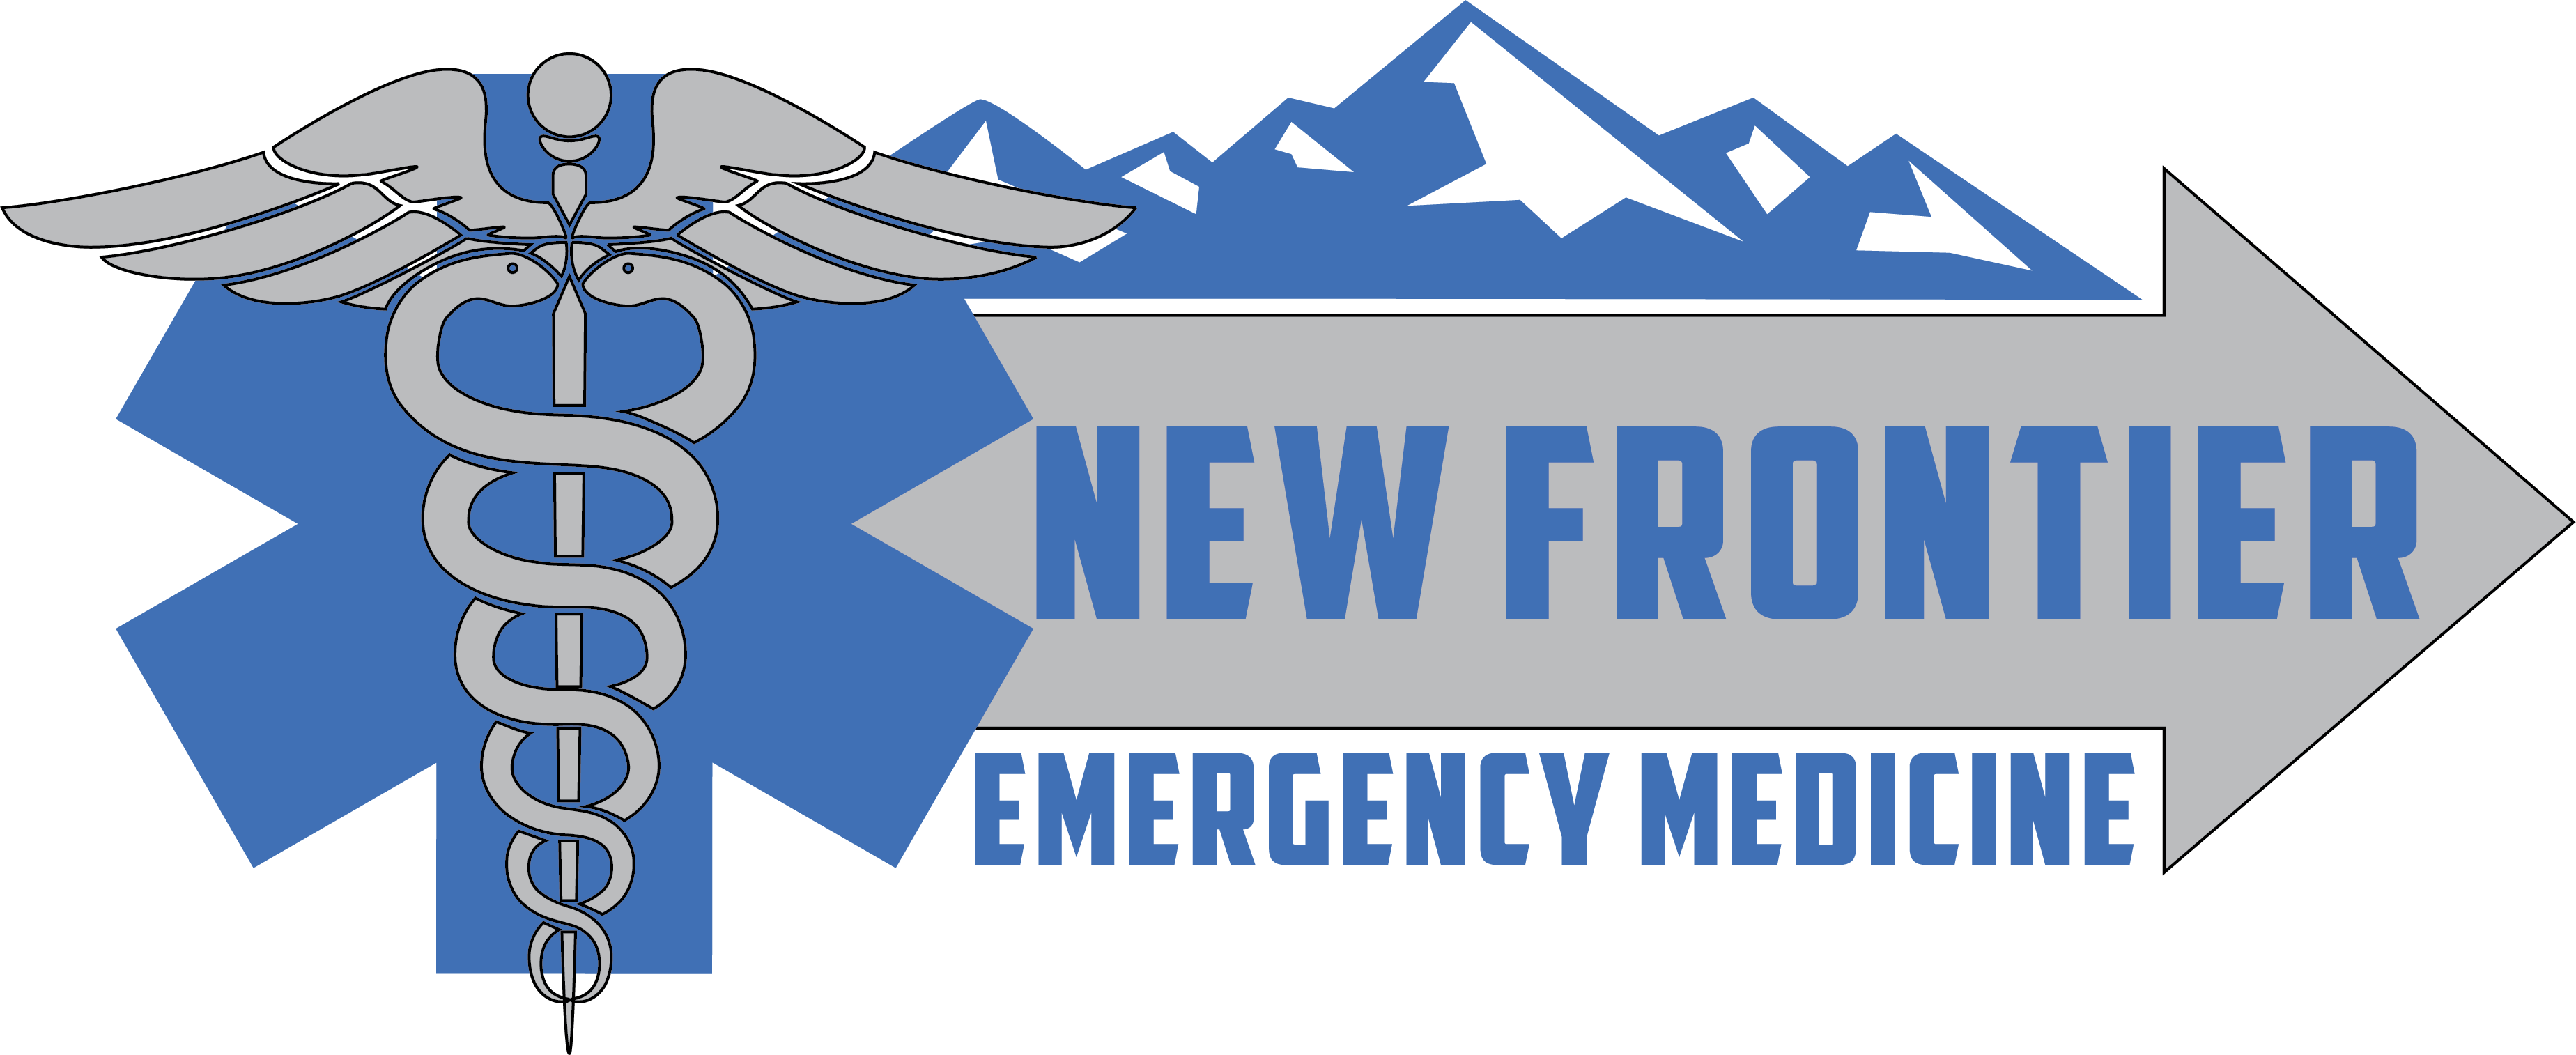 new-frontier-emergency-medicine-symposium-logo